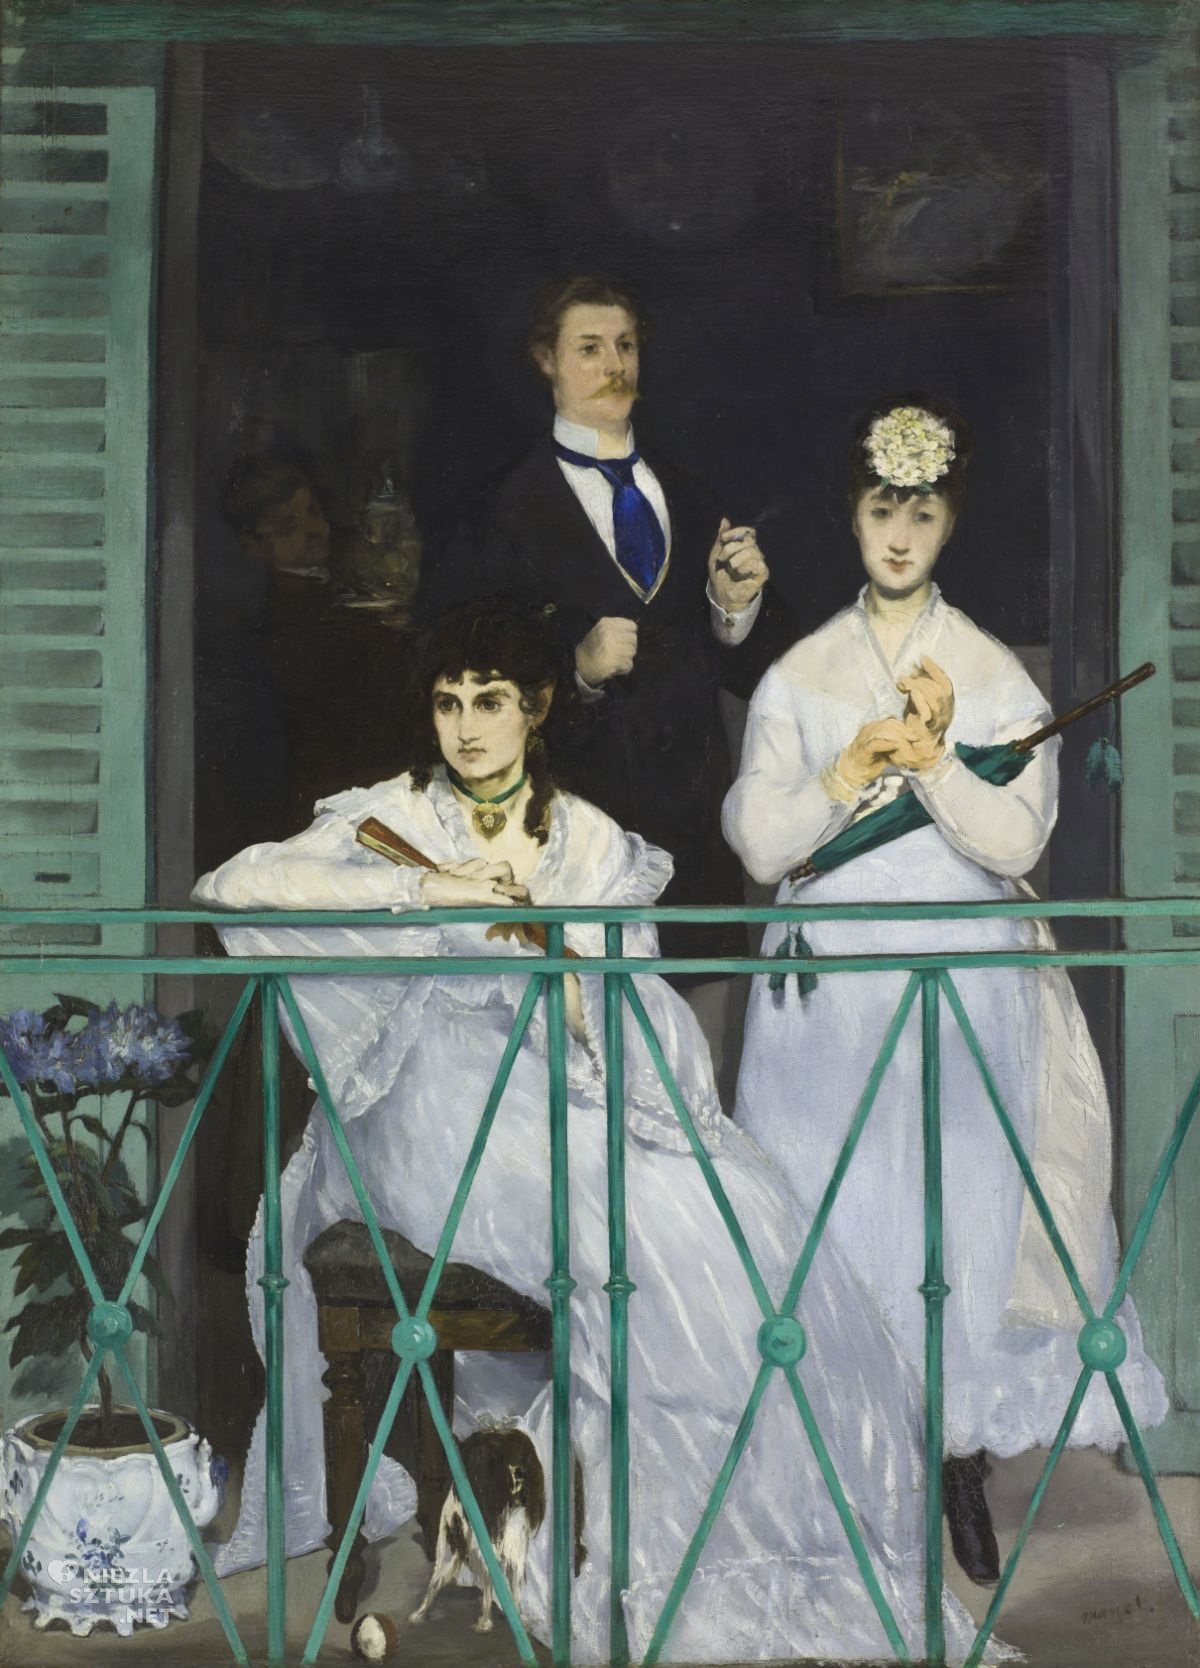 Édouard Manet, Balkon, sztuka francuska, niezła sztuka